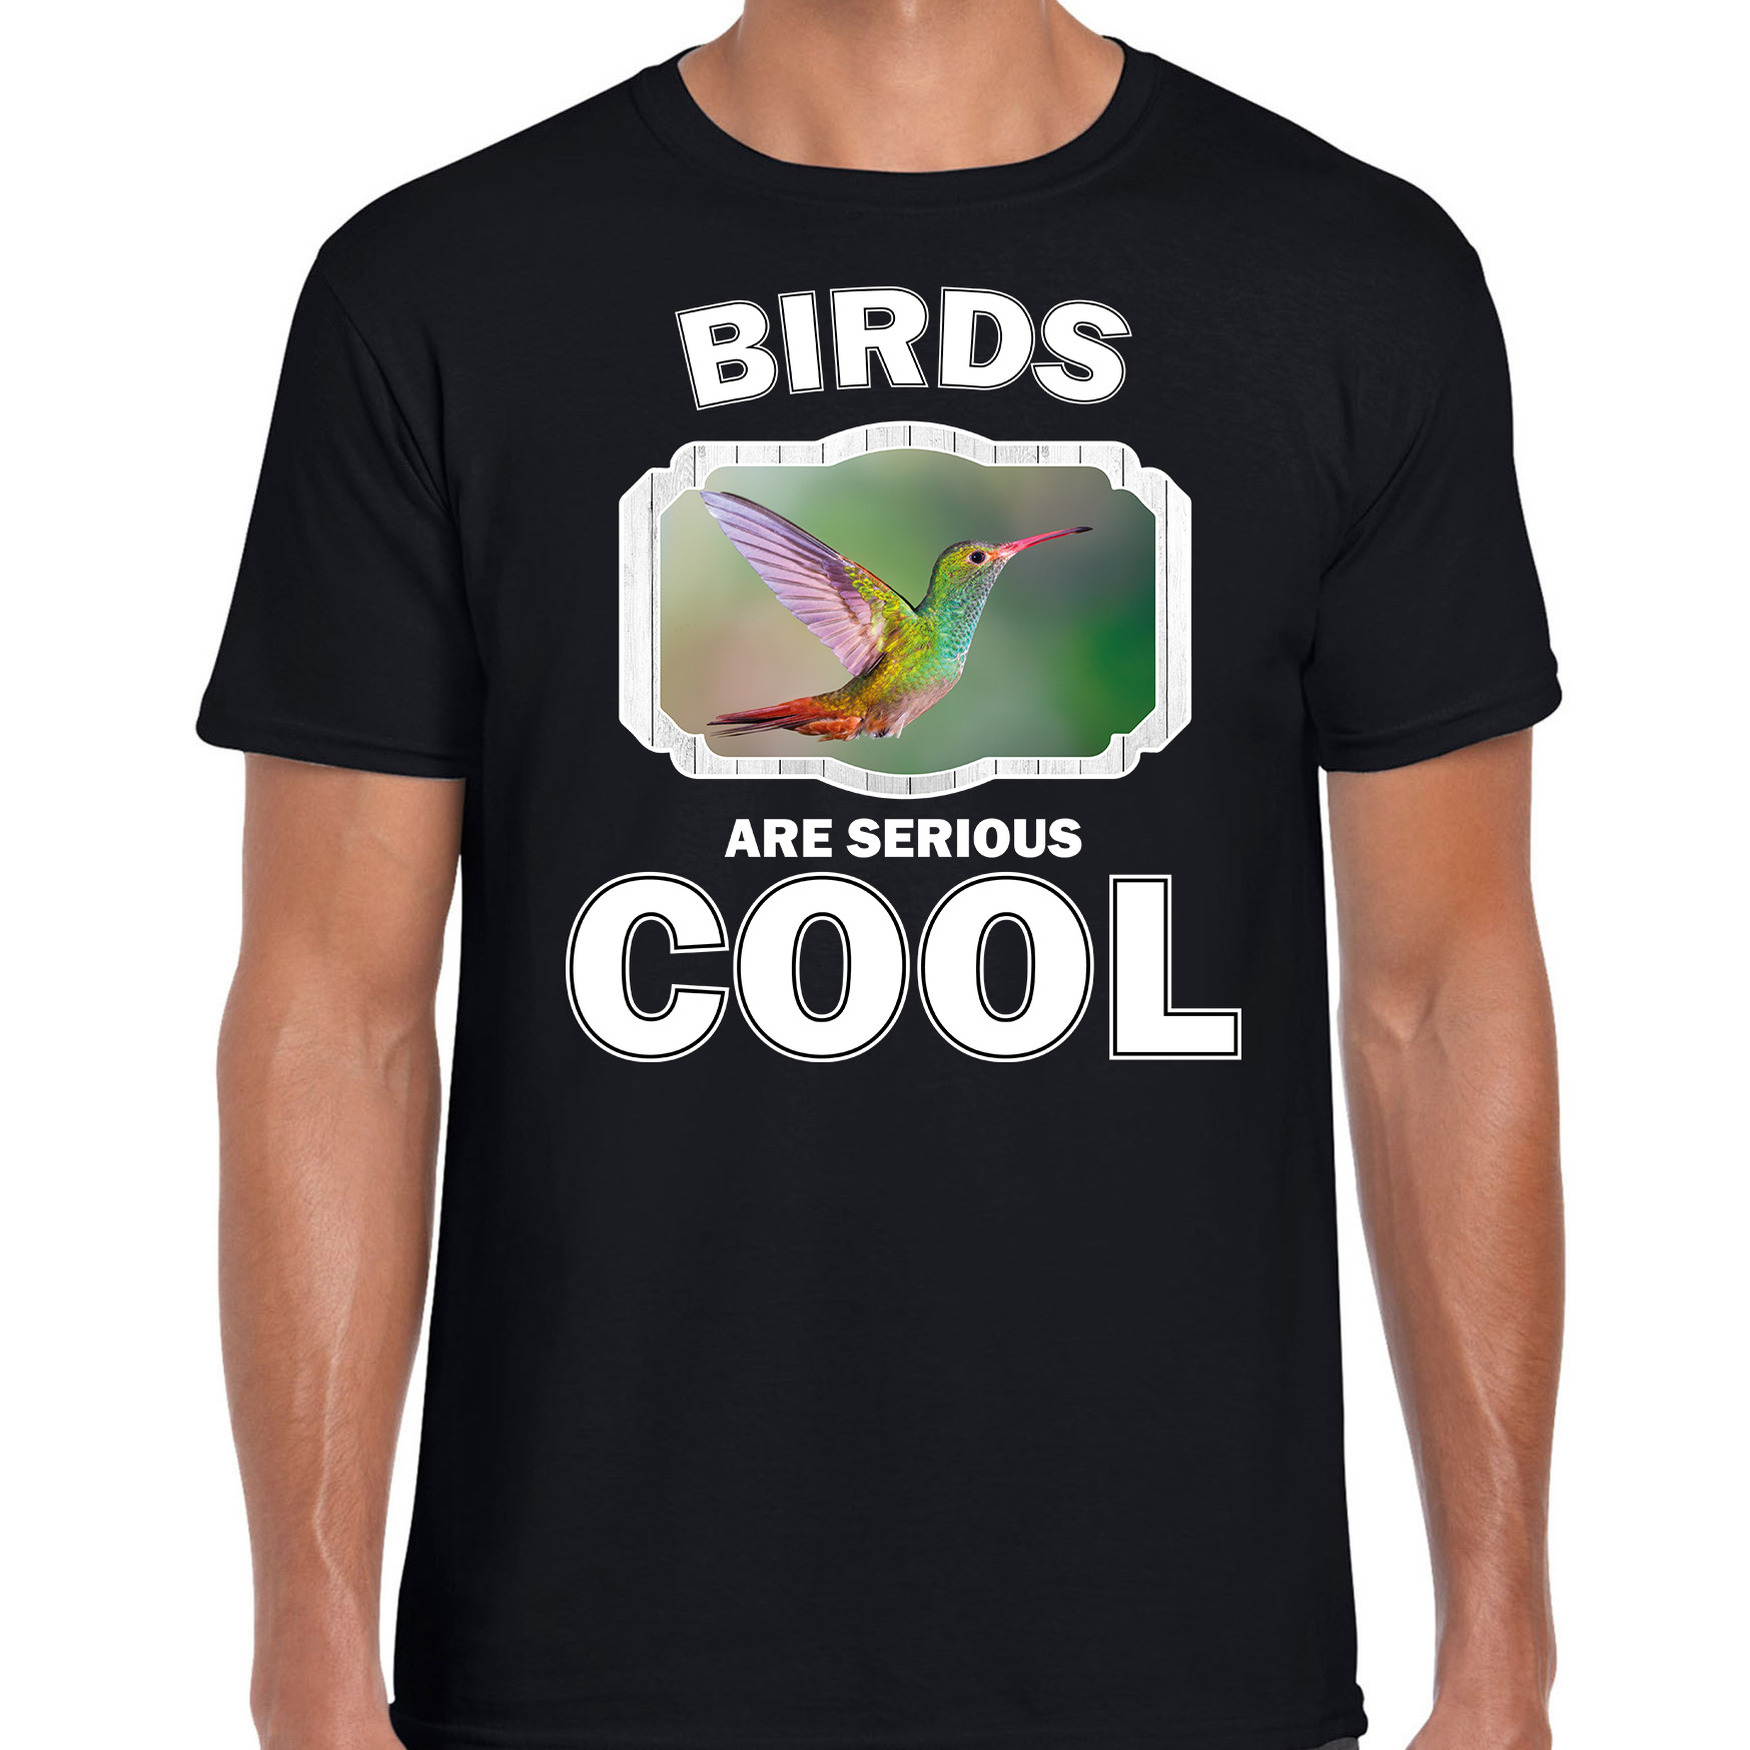 T-shirt birds are serious cool zwart heren - vogels/ kolibrie vogel shirt